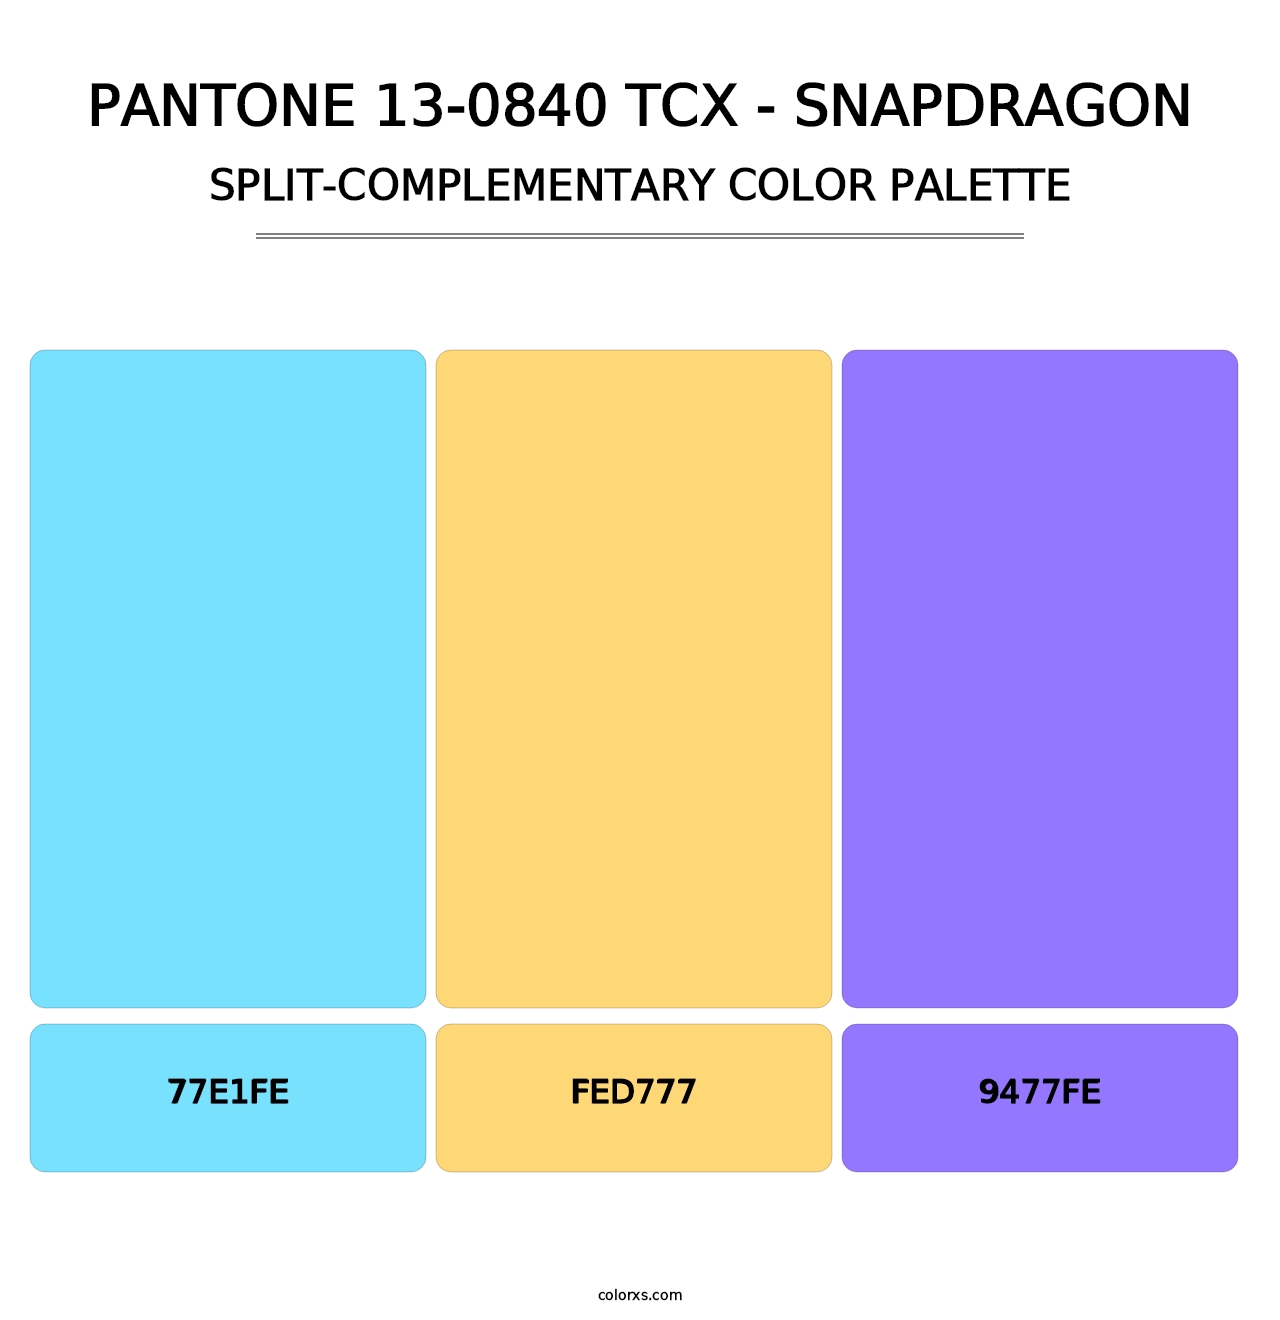 PANTONE 13-0840 TCX - Snapdragon - Split-Complementary Color Palette